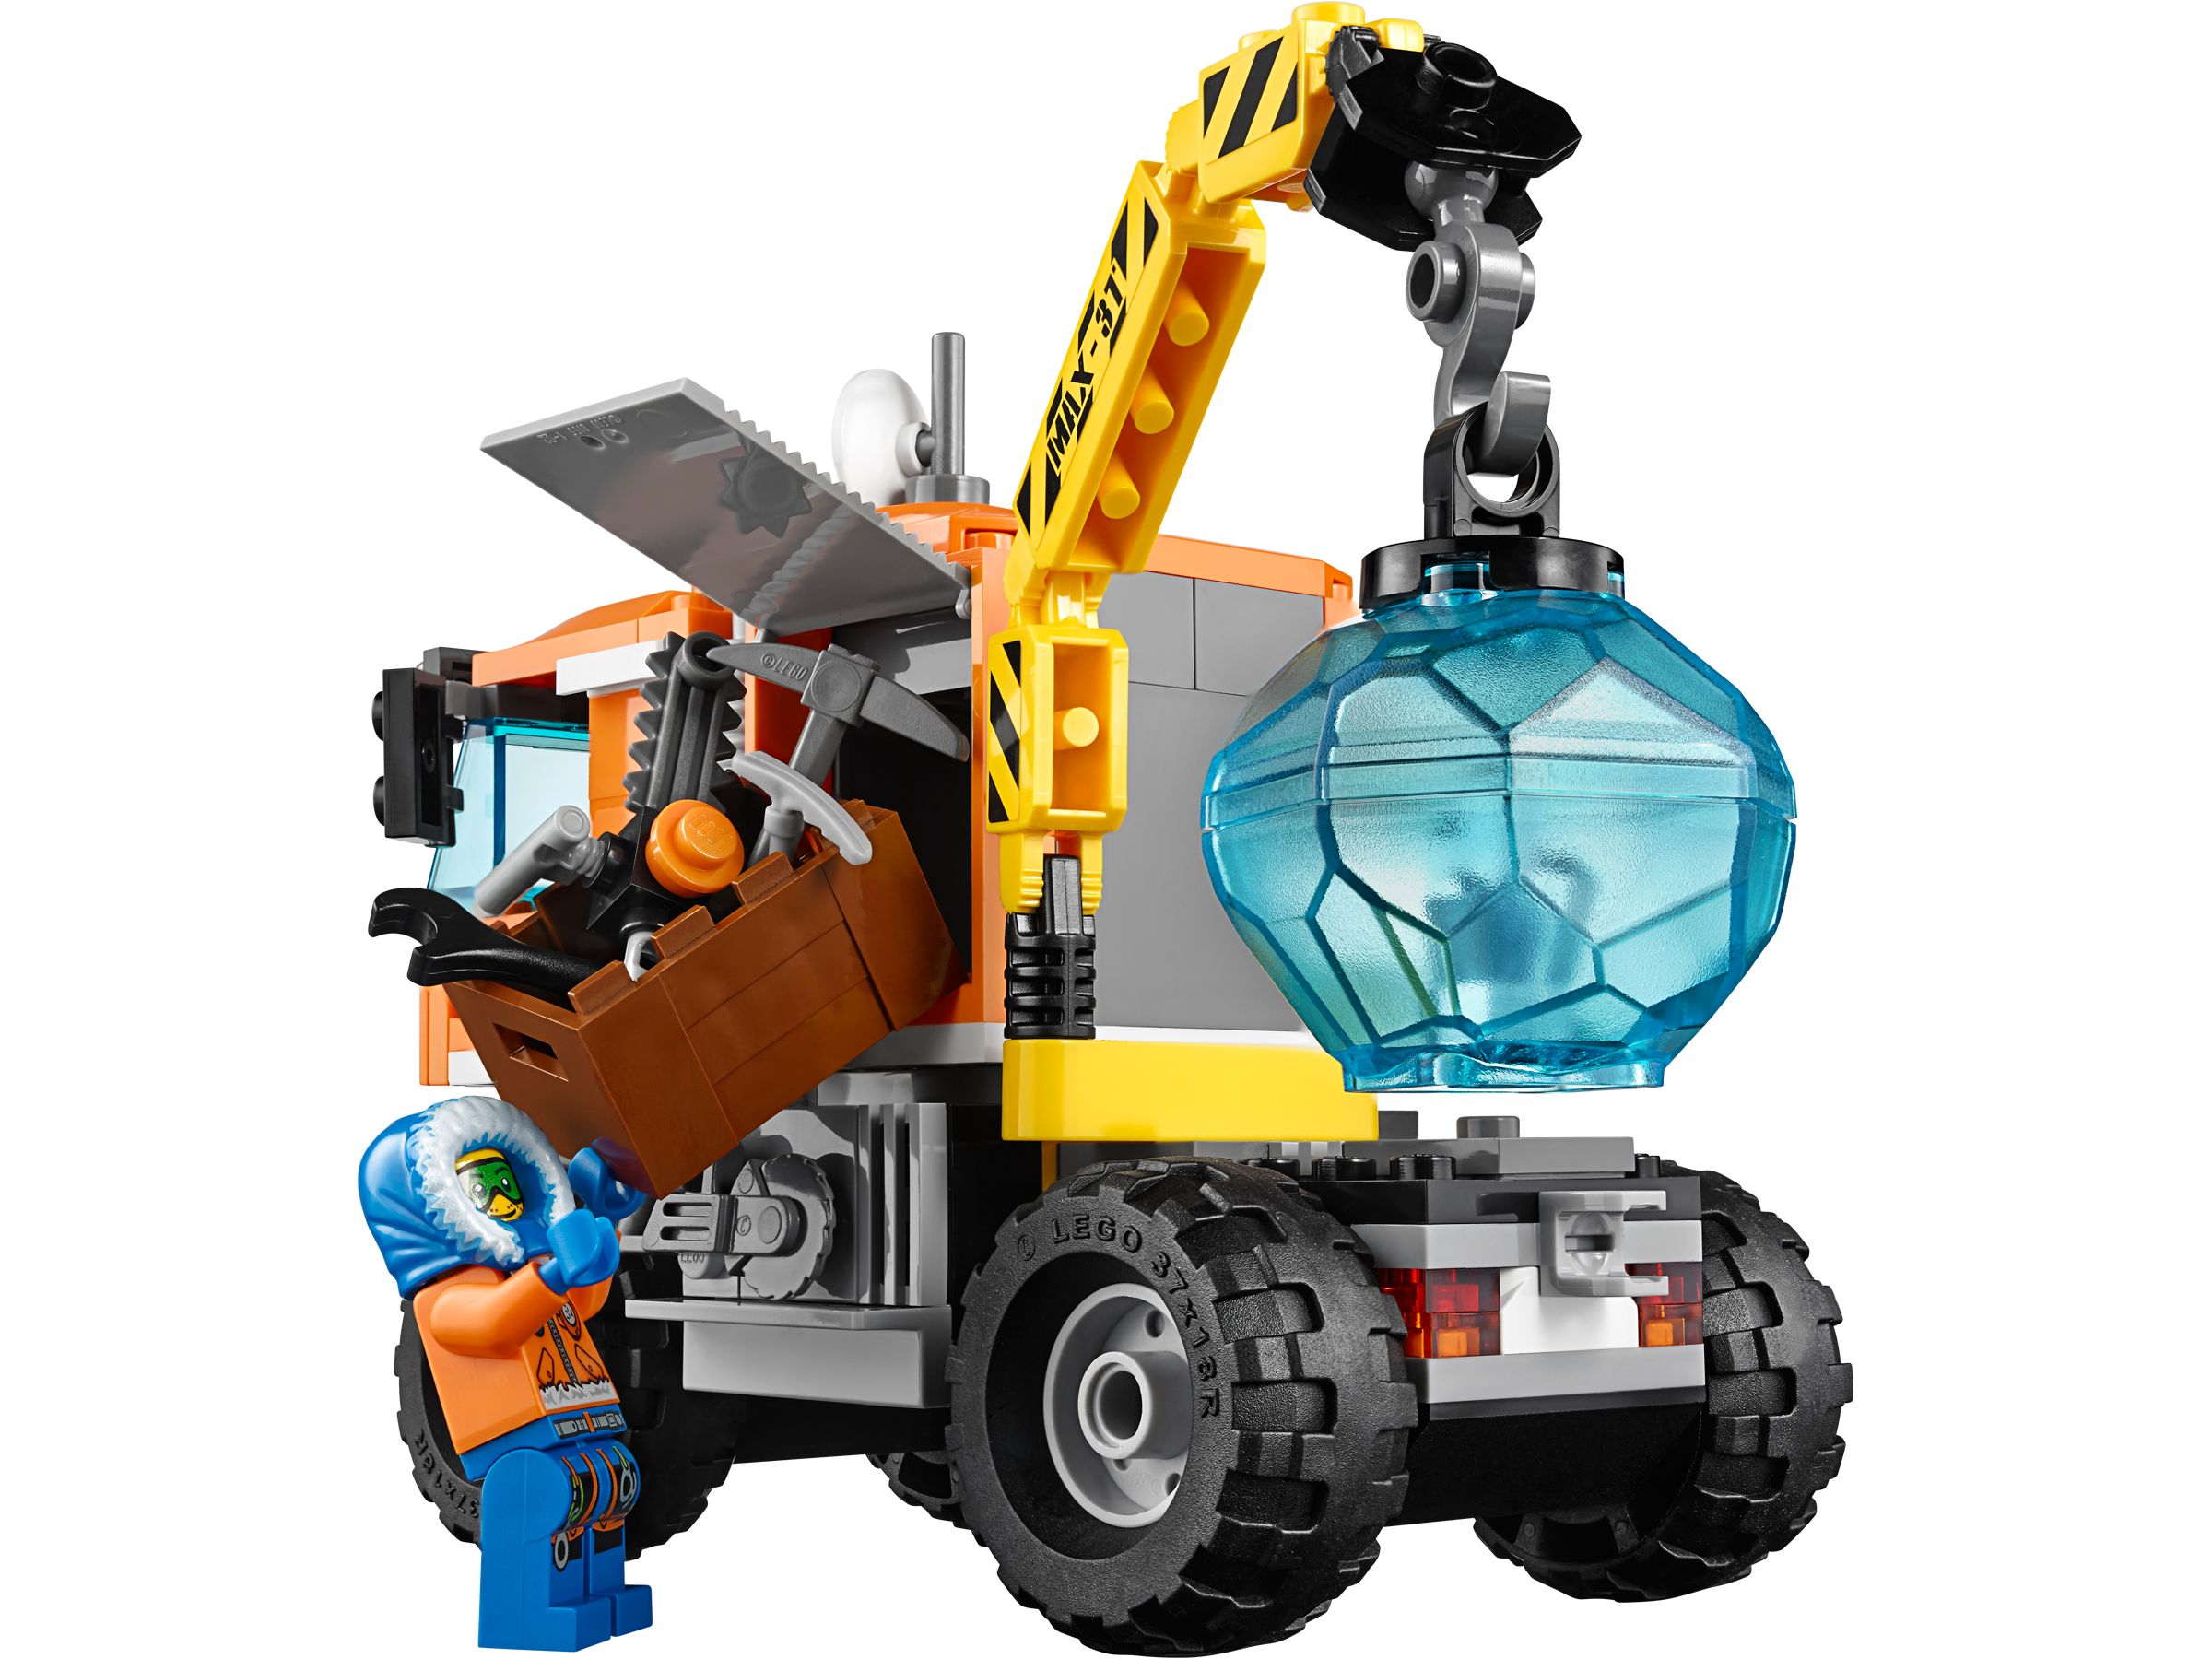 LEGO City 60035 Arktis-Truck LEGO_60035_alt5.jpg